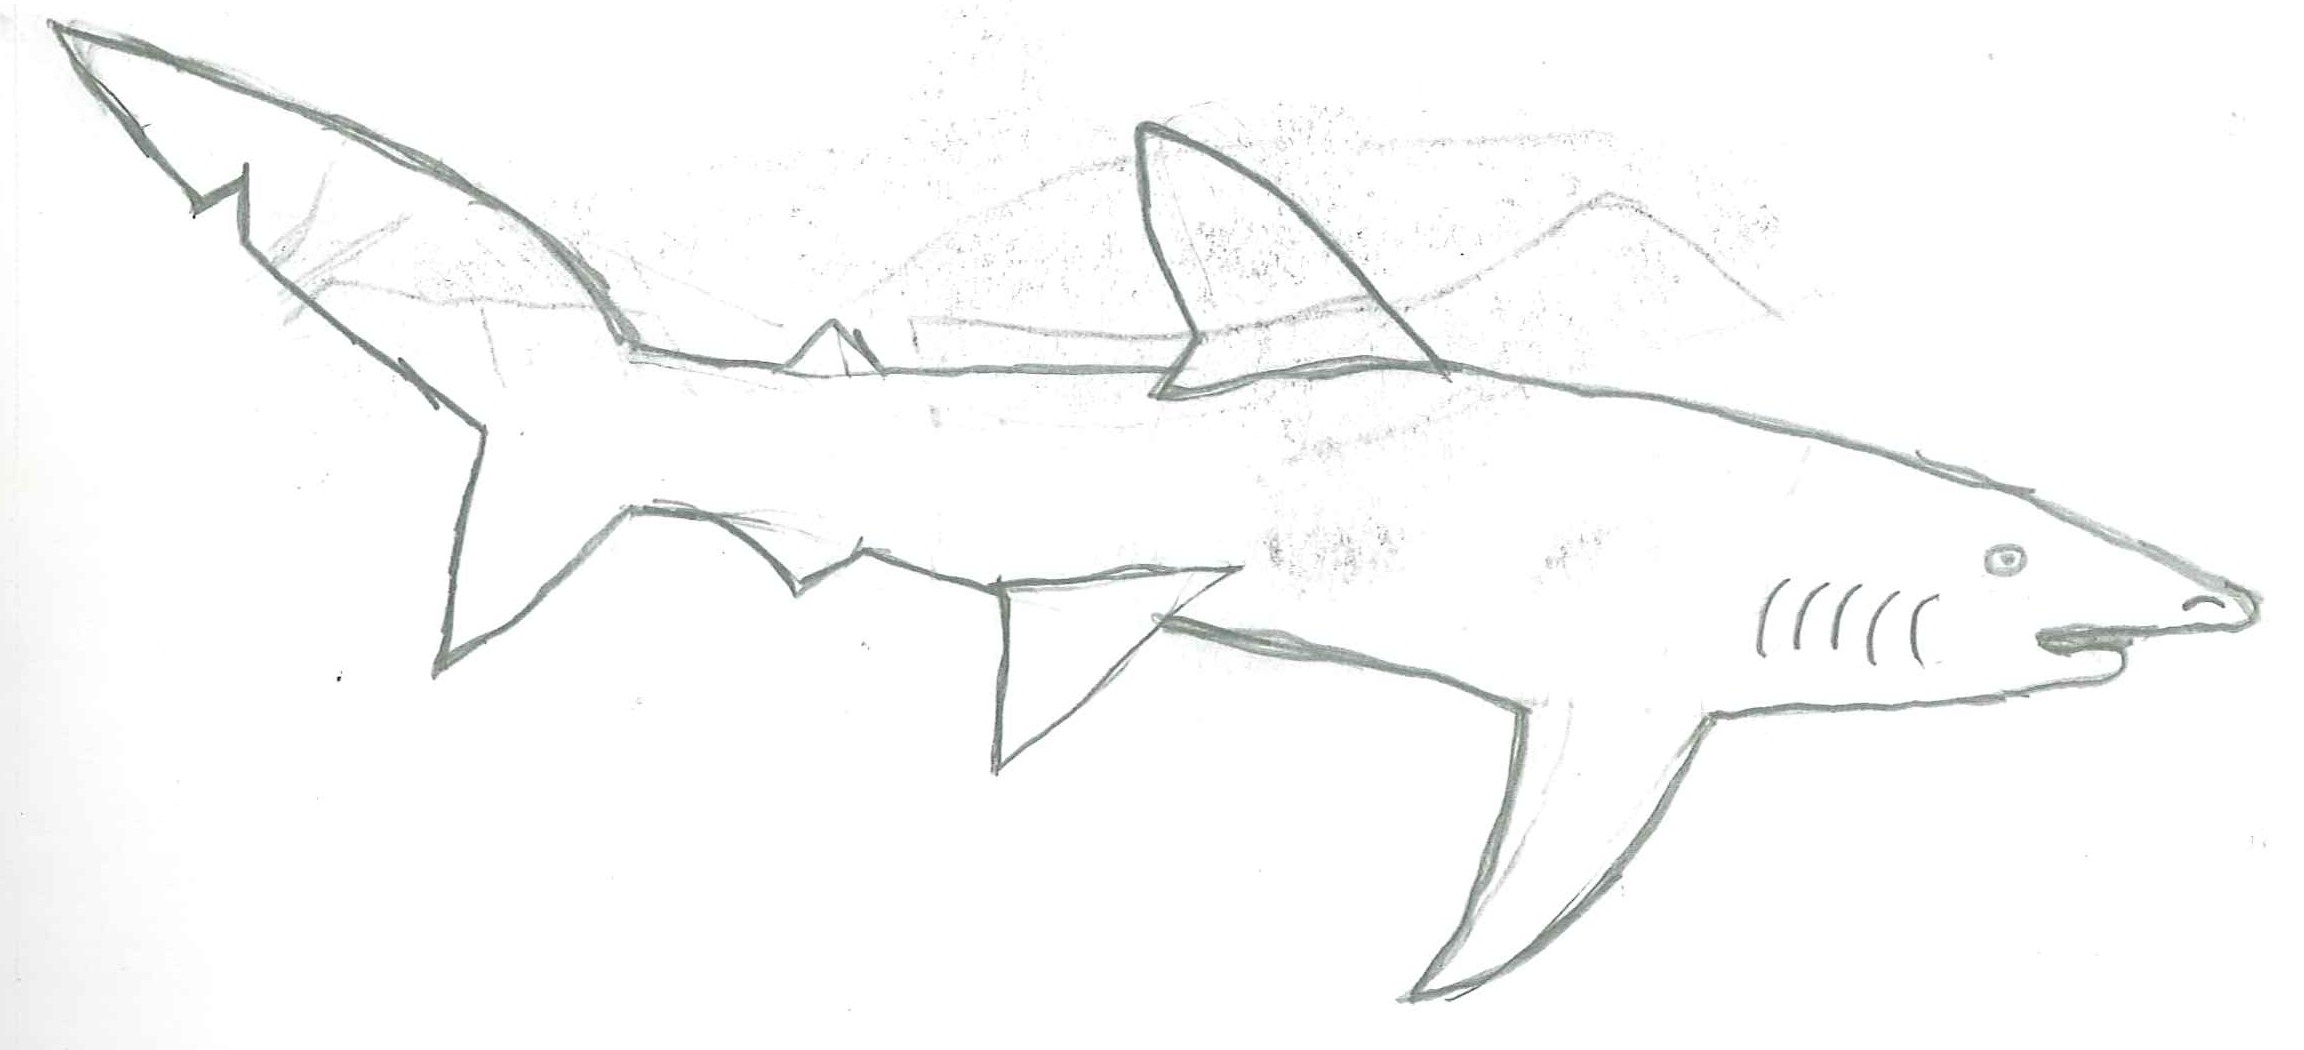 Blue Shark Drawing - sharksz77 © 2018 - Feb 11, 2011